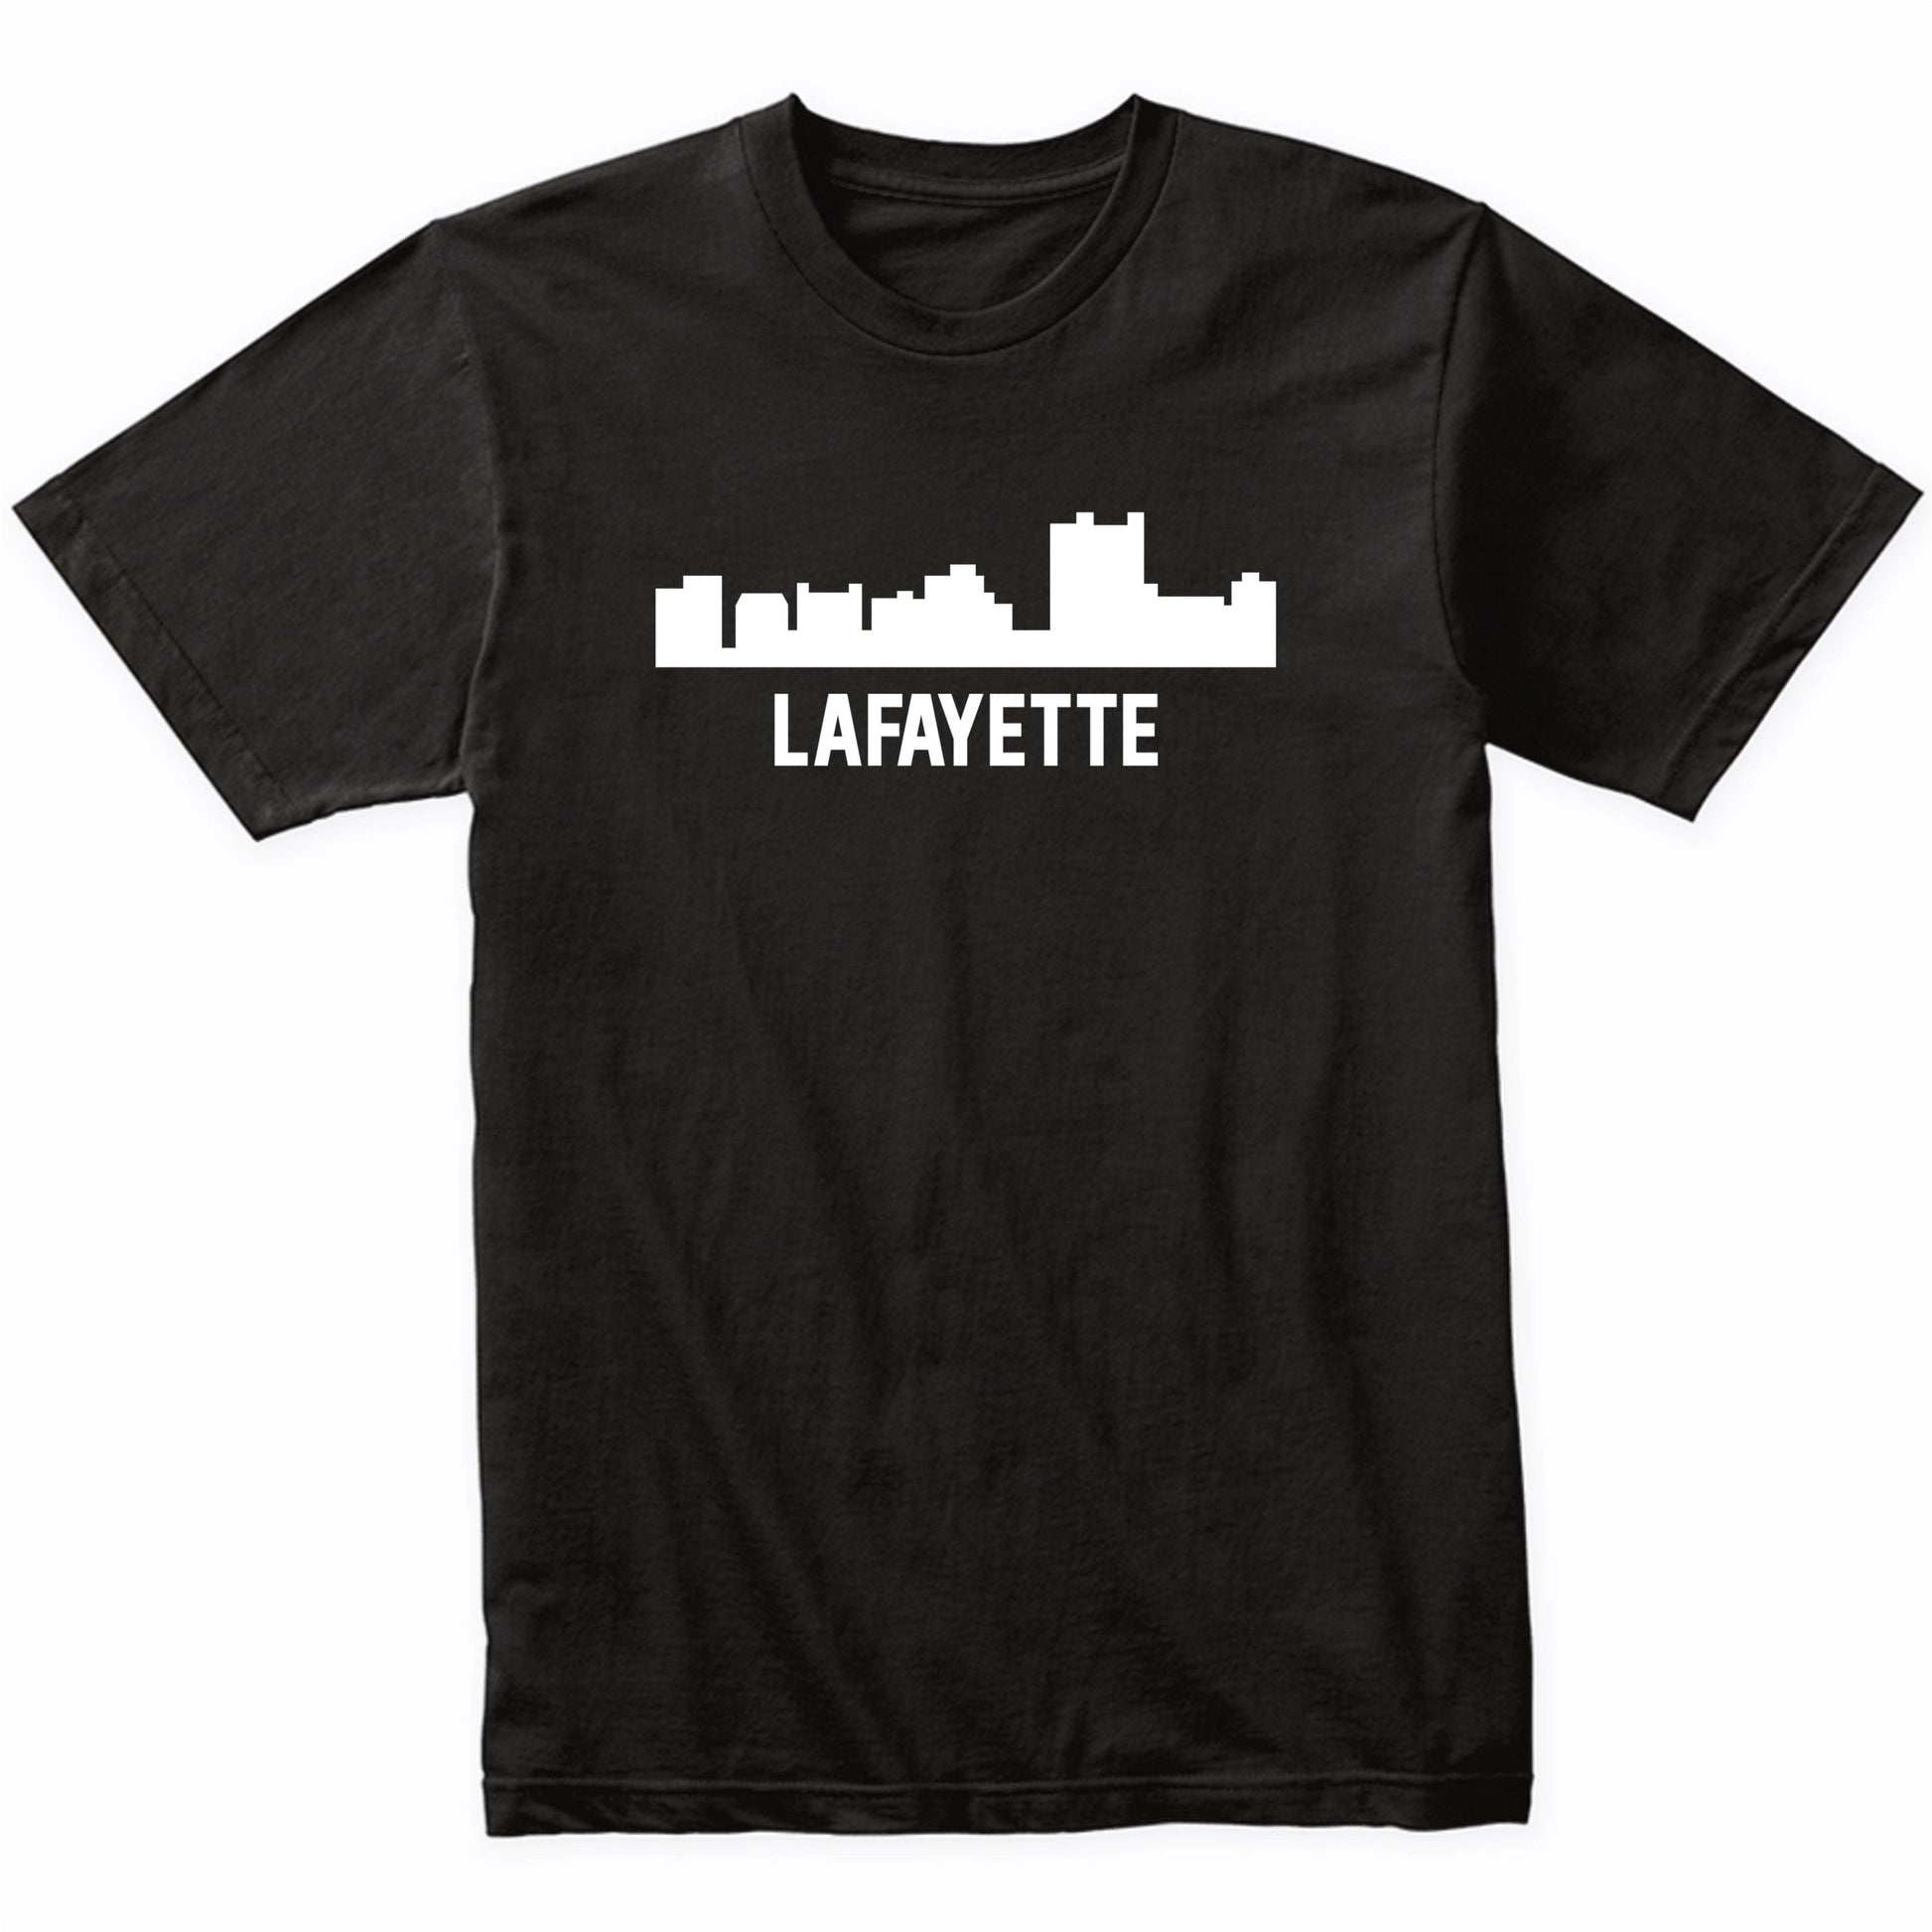 Lafayette Louisiana Skyline Cityscape T-Shirt